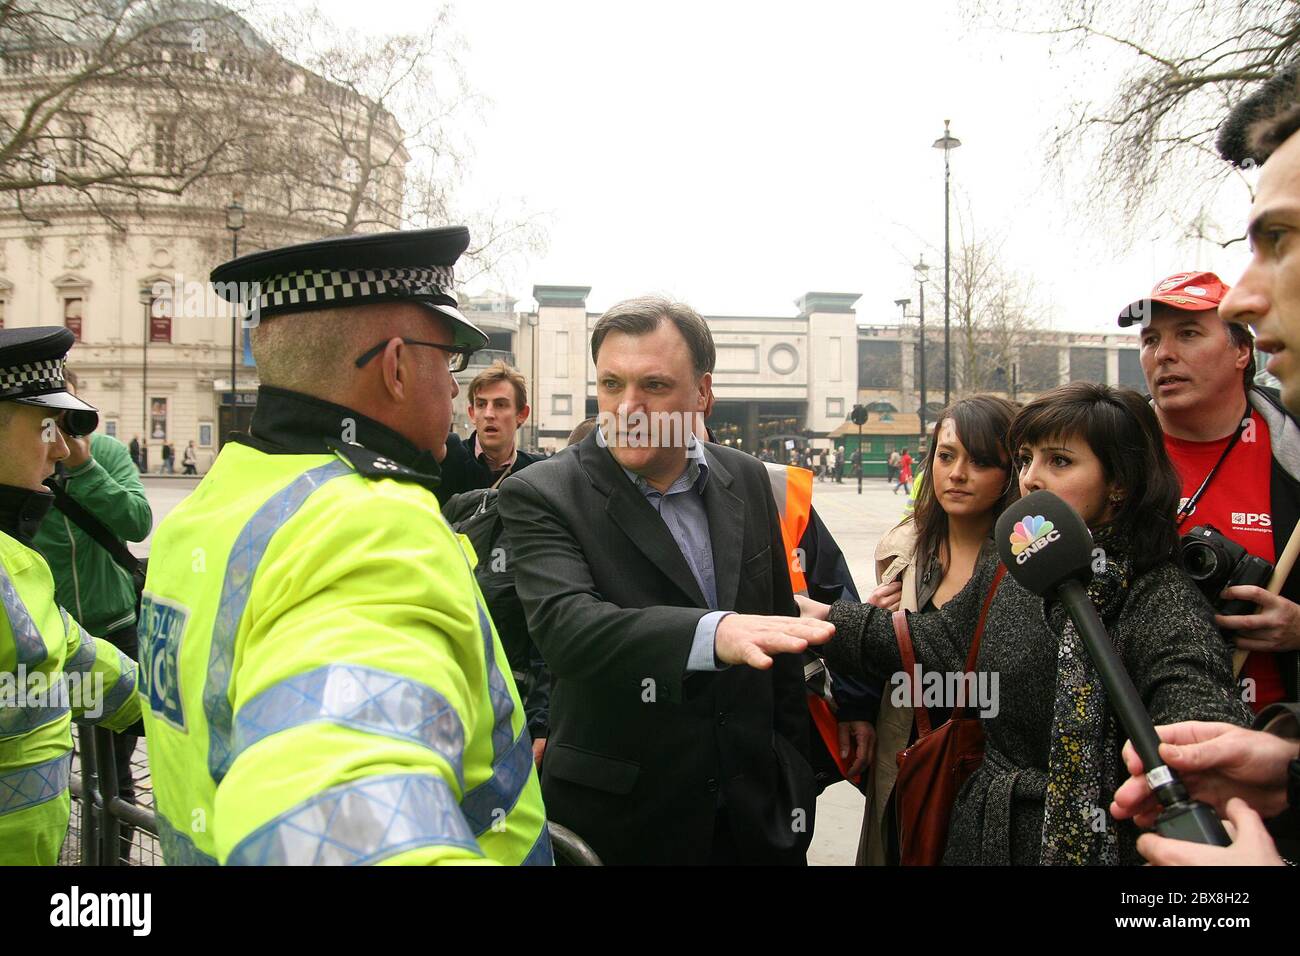 Labour's Schatten-Kanzler Ed Ball schließt sich etwa 200 hunderttausend Menschen an - der größte Protest seit Jahren - marschieren durch die Straßen Londons Englands, um gegen die geplanten staatlichen Ausgabenkürzungen zu protestieren. Stockfoto